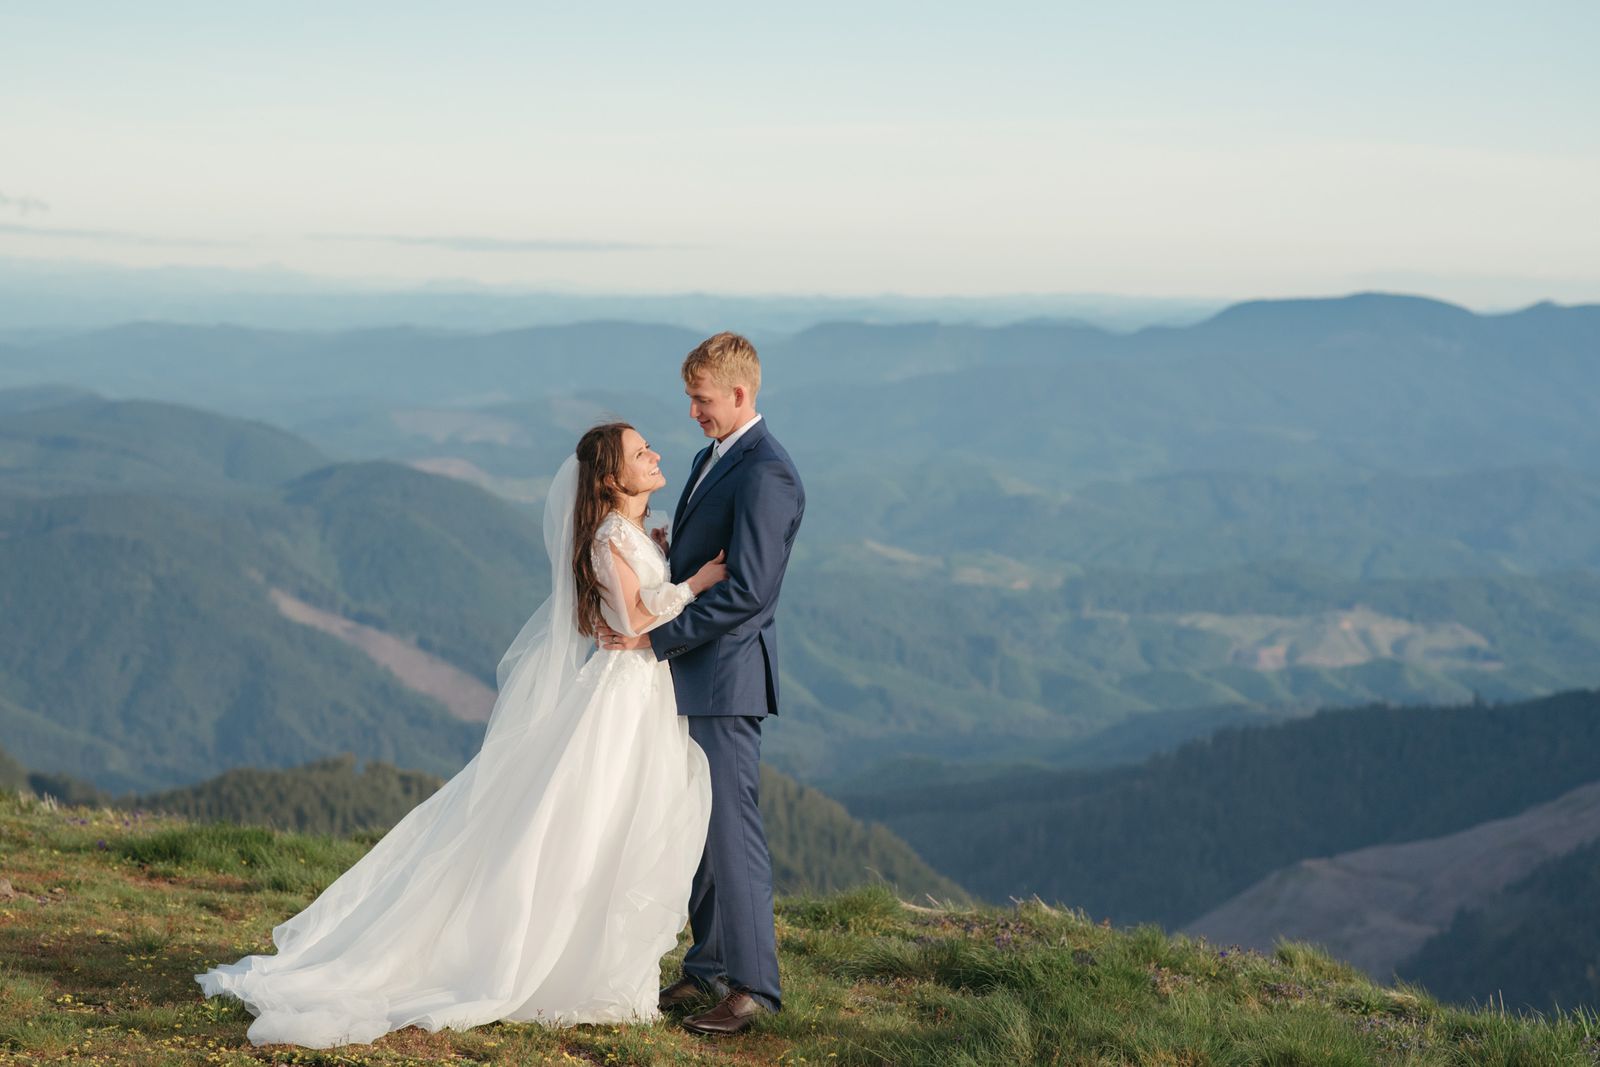 Mountain wedding photos